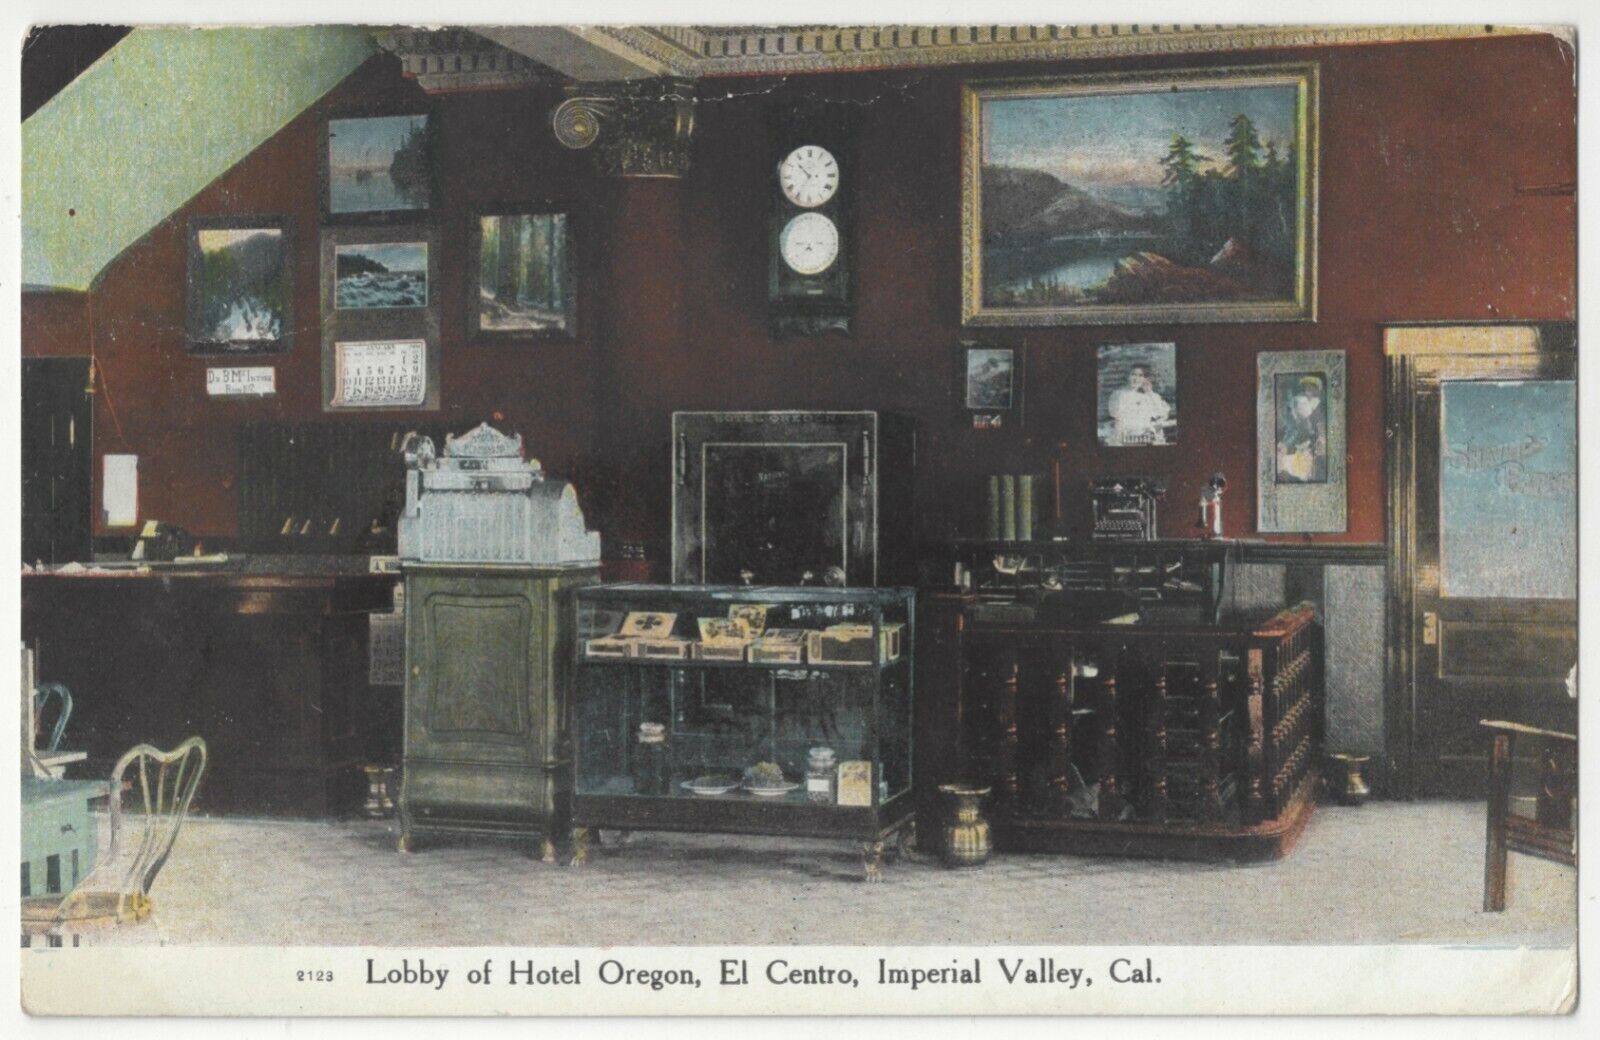 1912 El Centro, California - Hotel Oregon Lobby, Cigar Case, Imperial County